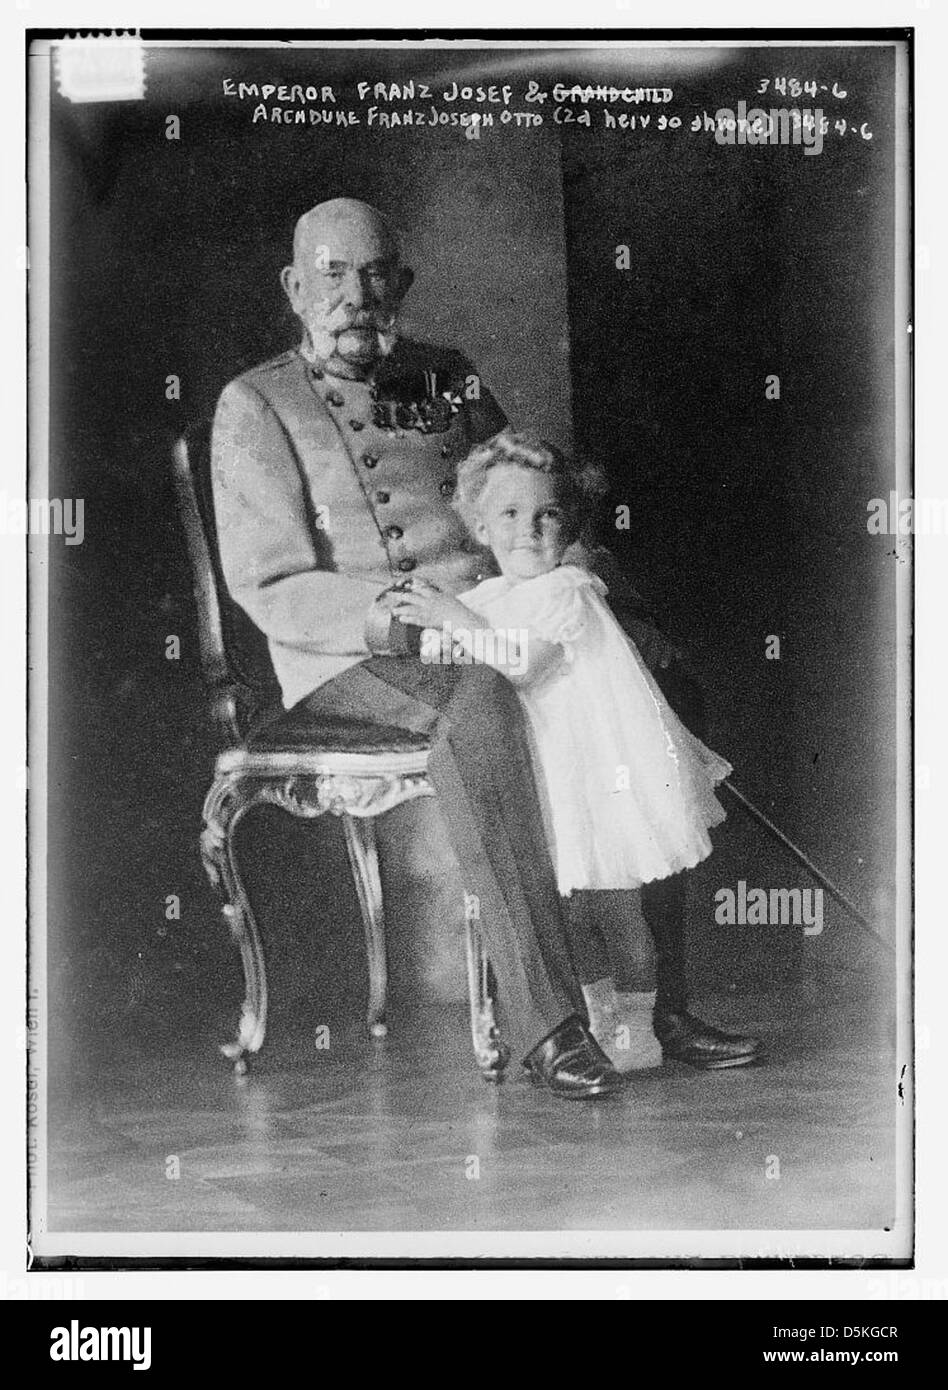 L'imperatore Franz Josef e arciduca Franz Joseph Otto (2d erede al trono) (LOC) Foto Stock